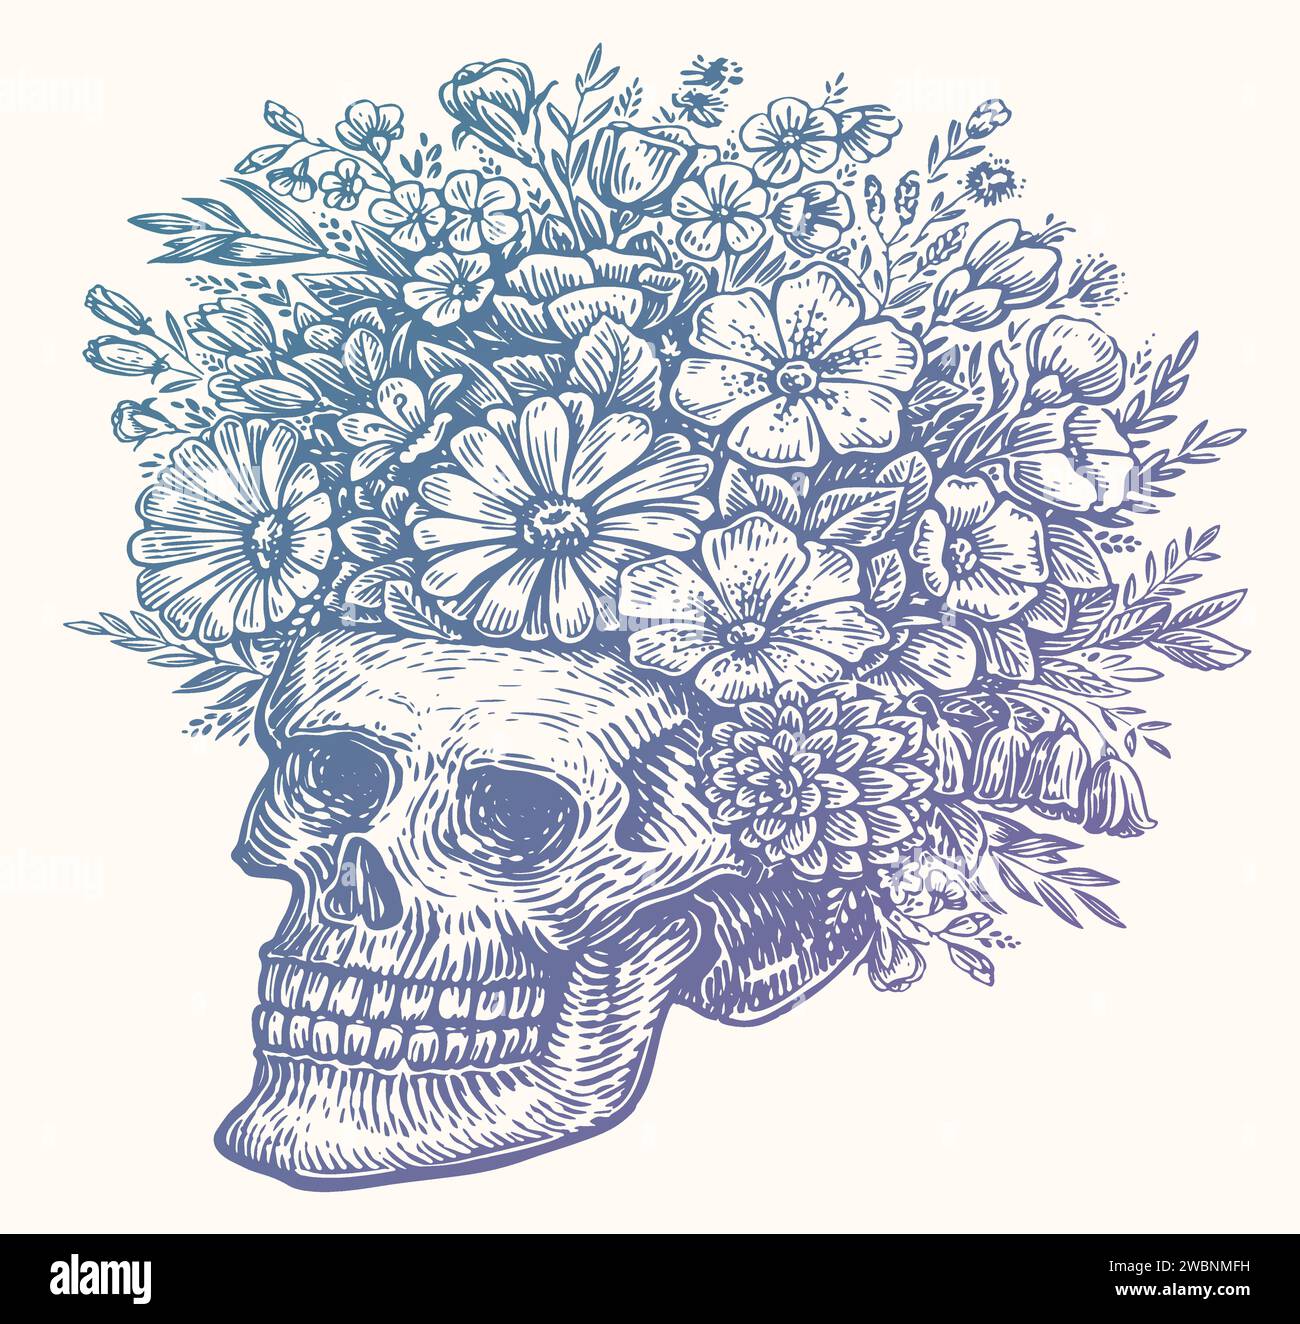 Menschlicher Schädel mit Blumen, Skizzenzeichnung. Handgezeichnete Vektorillustration isoliert auf weißem Hintergrund Stock Vektor